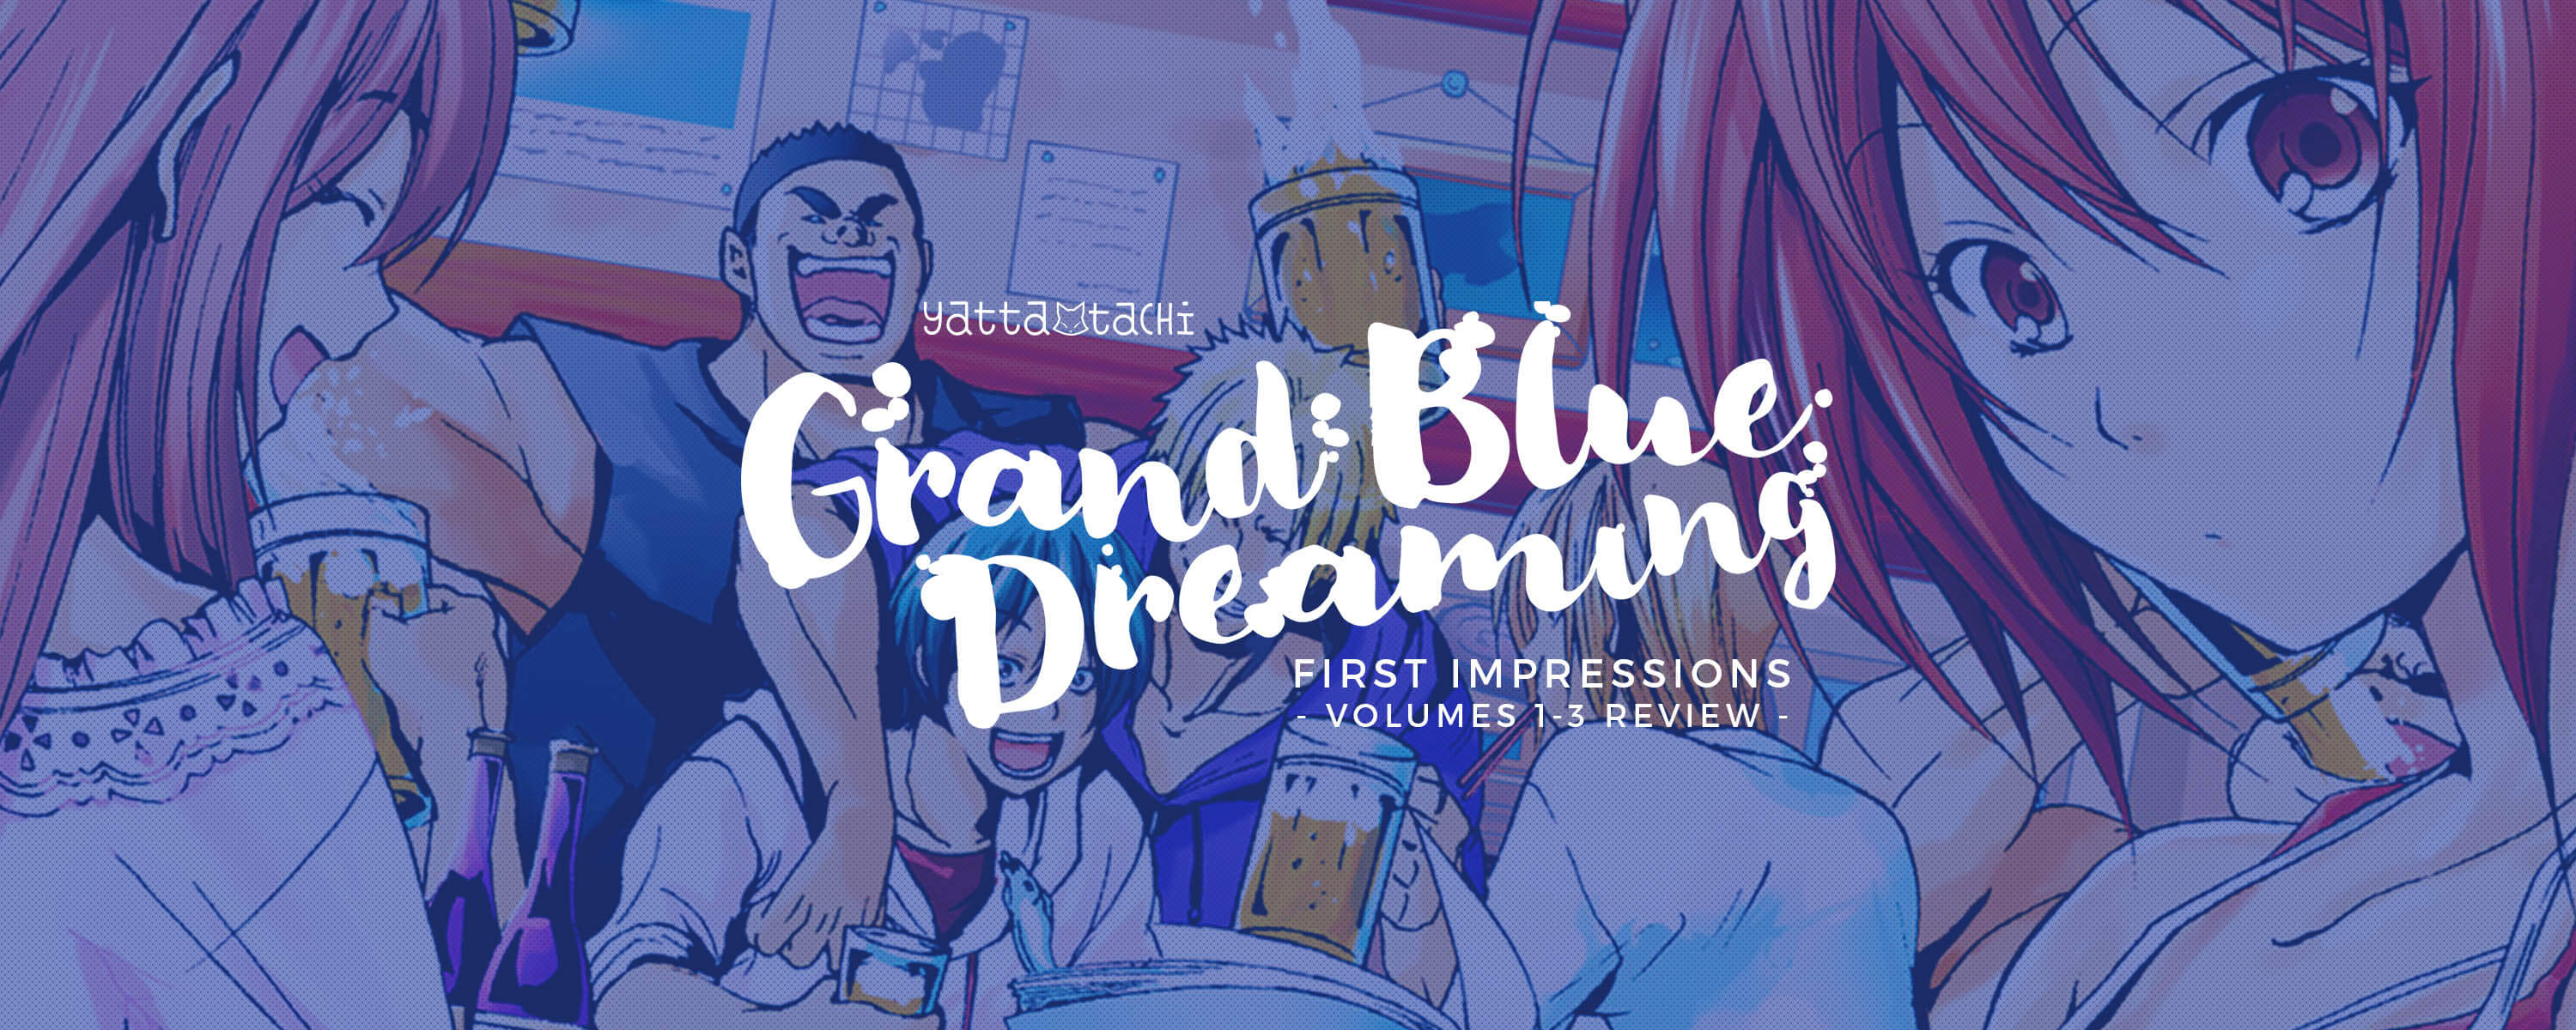 Grand Blue Dreaming - É bom? /anime 